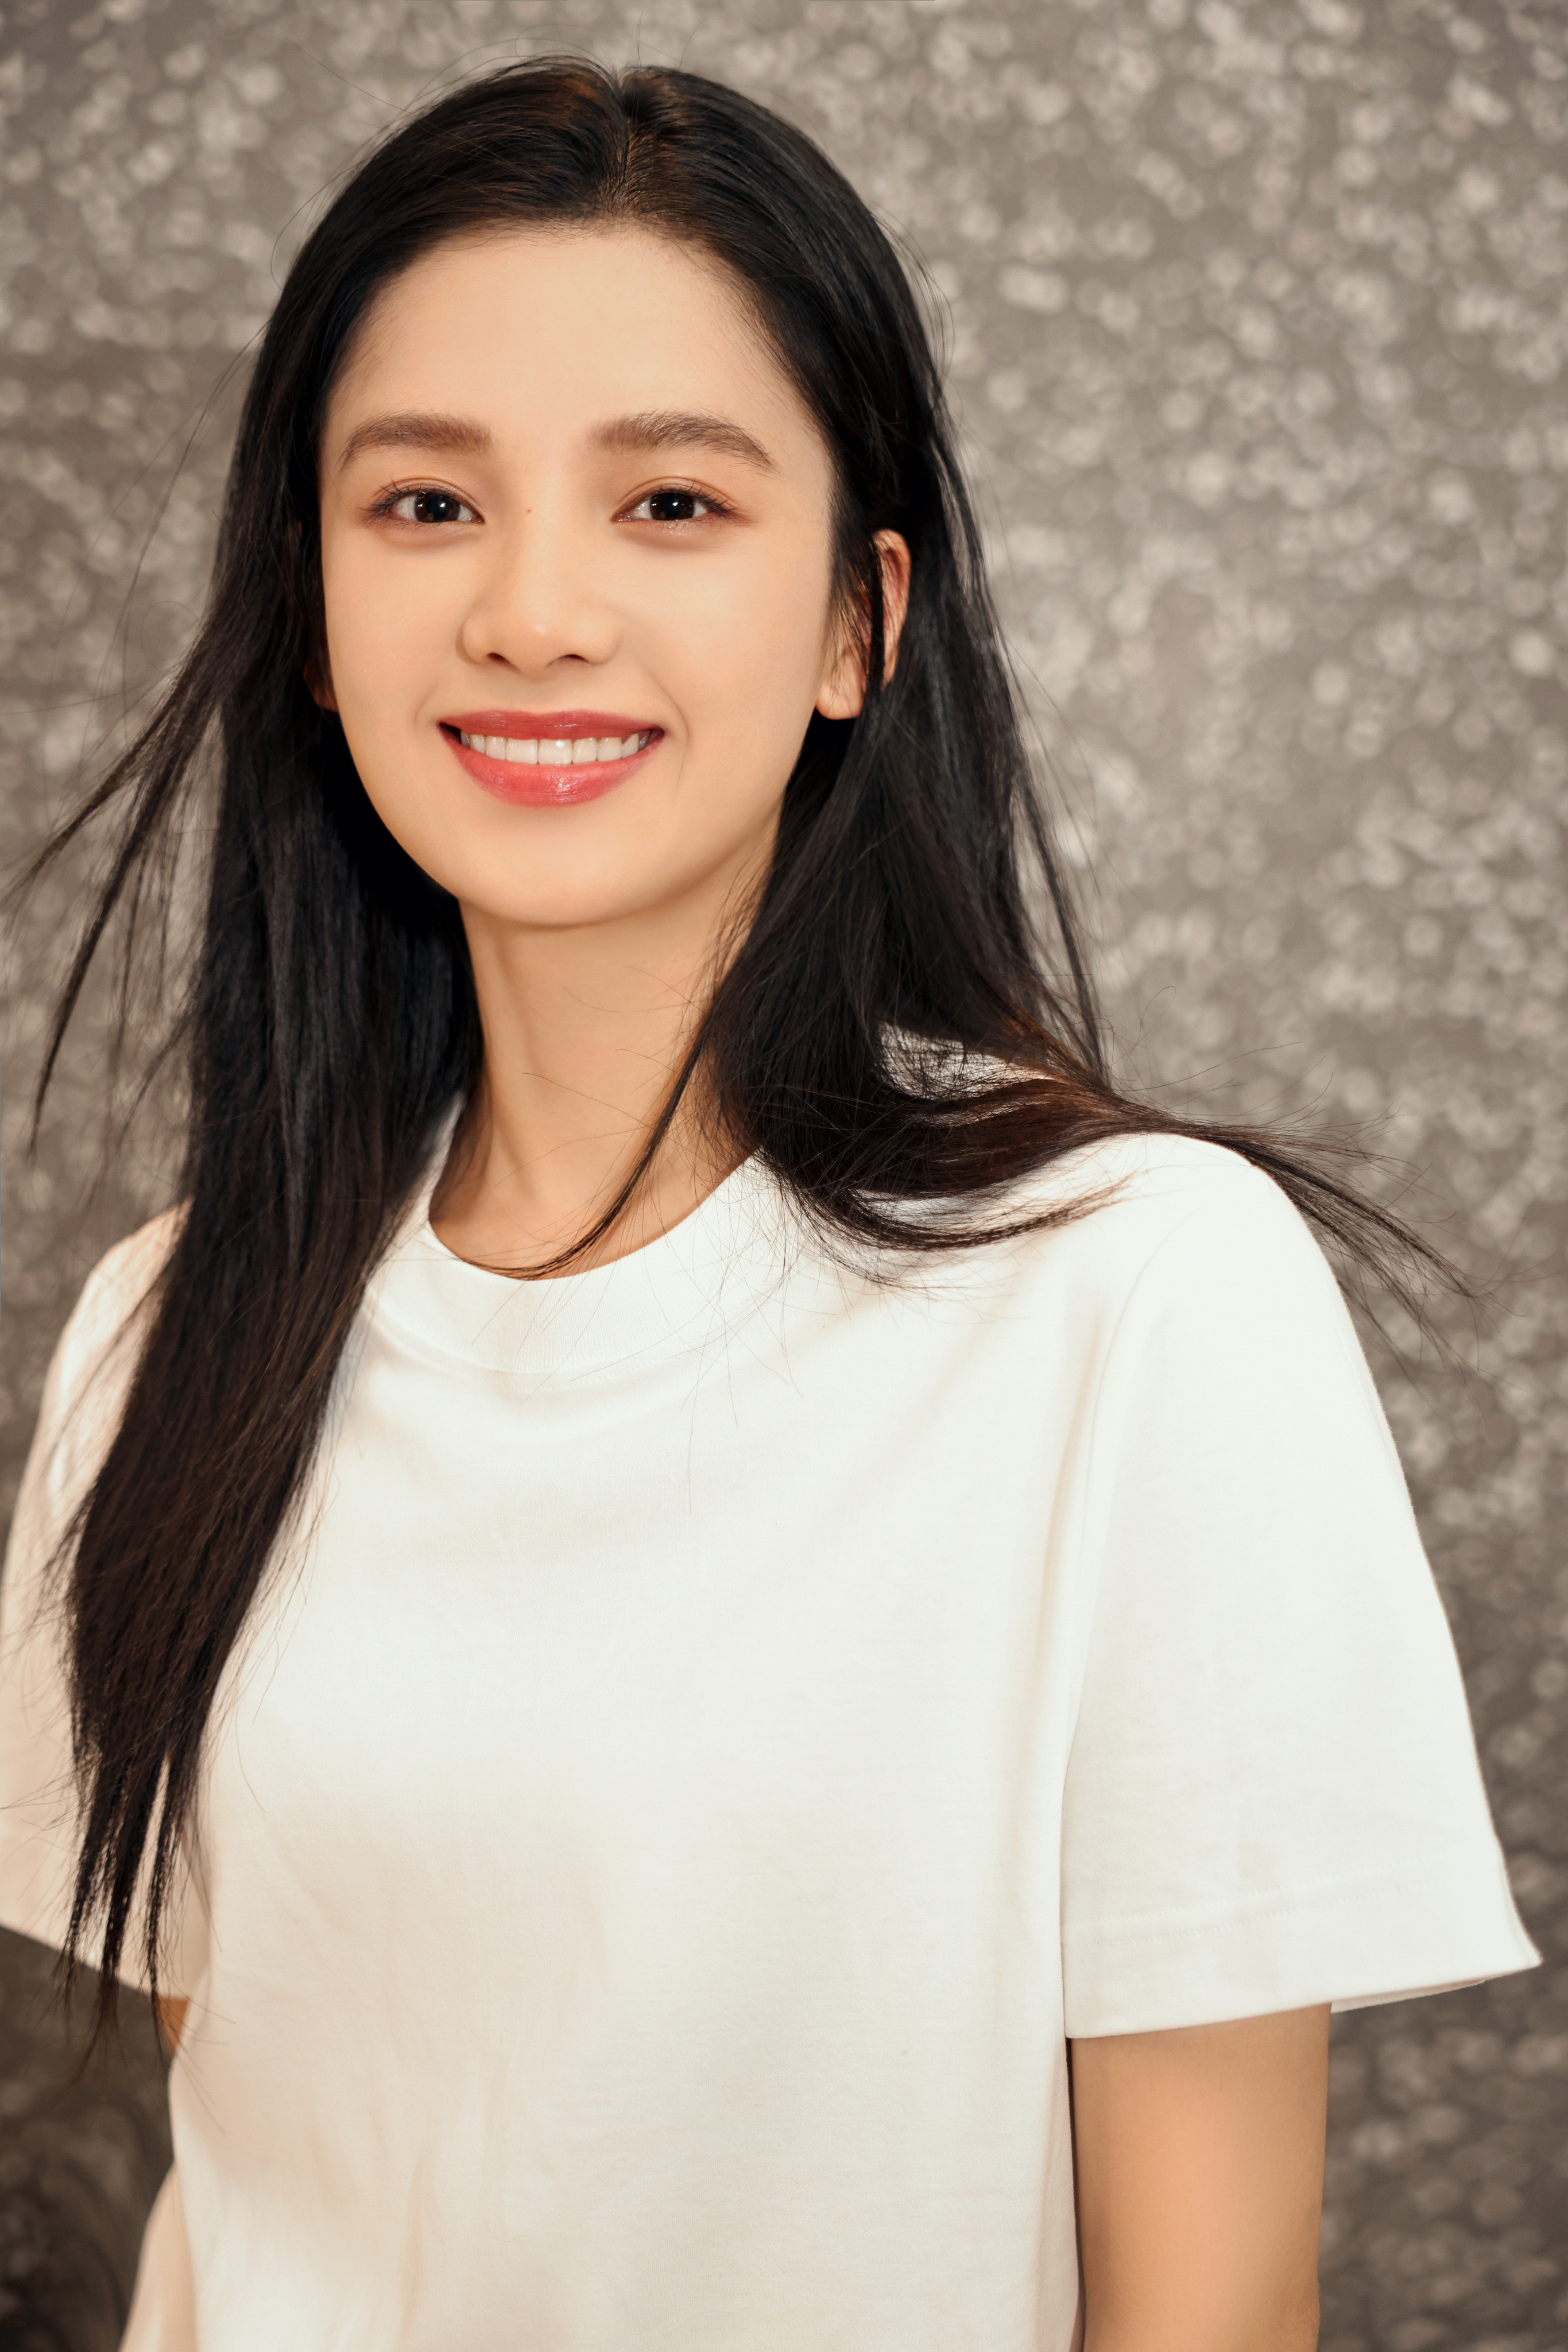 Zhang Jingyi Model Women T Shirt White Tops Asian Portrait Display 2731x4096